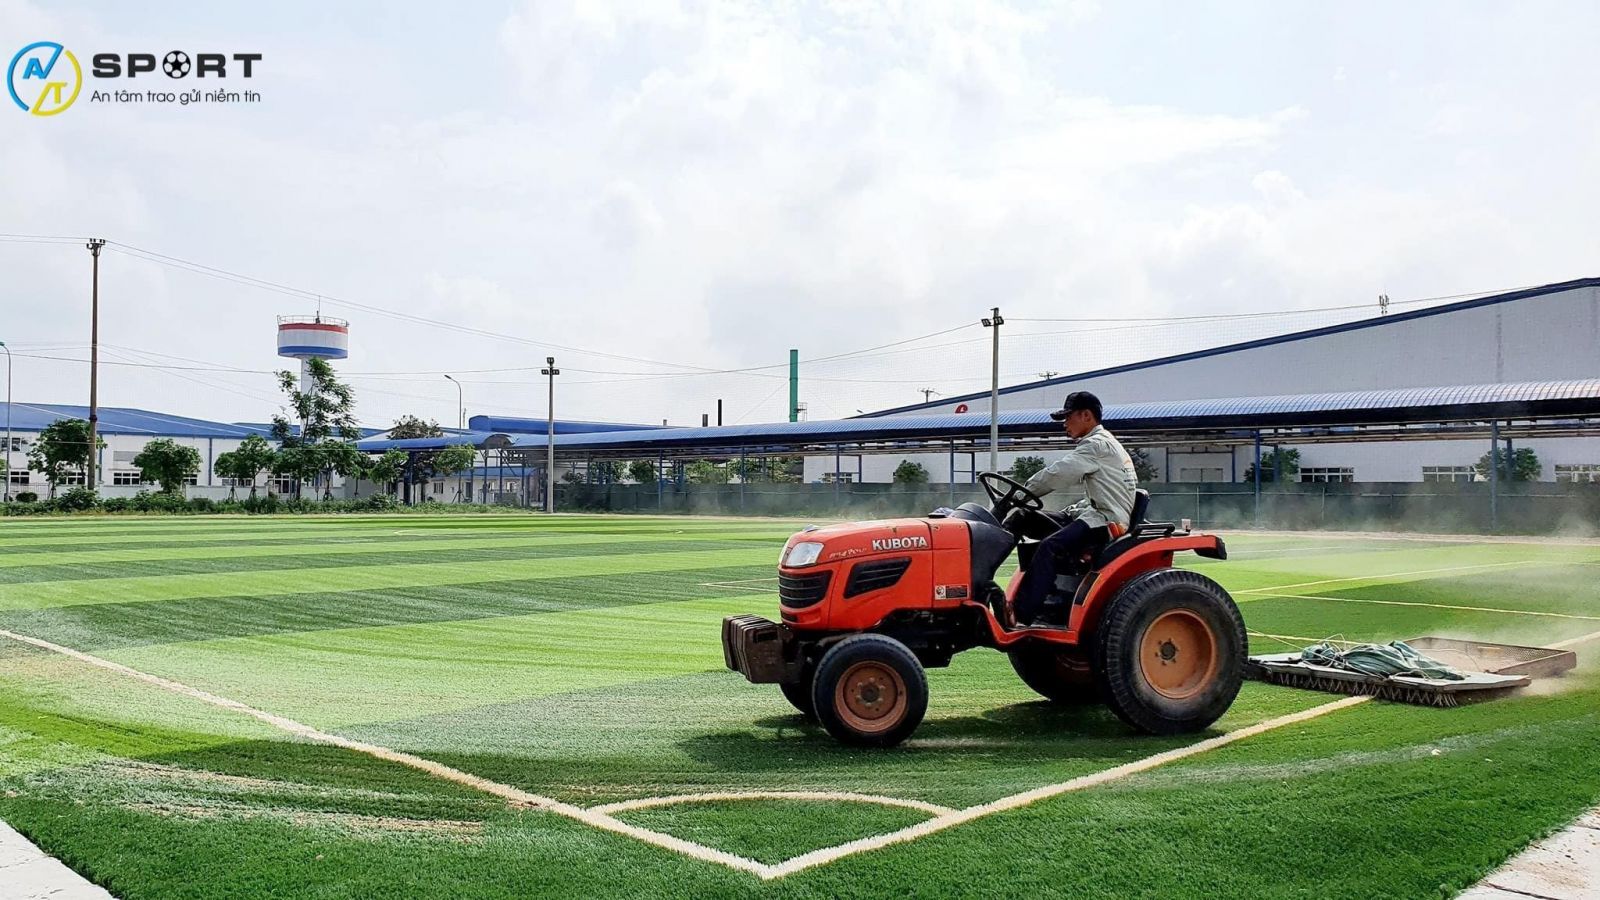 Thi công sân bóng nền cỏ nhân tạo tại Hoài Ân, Bình Định